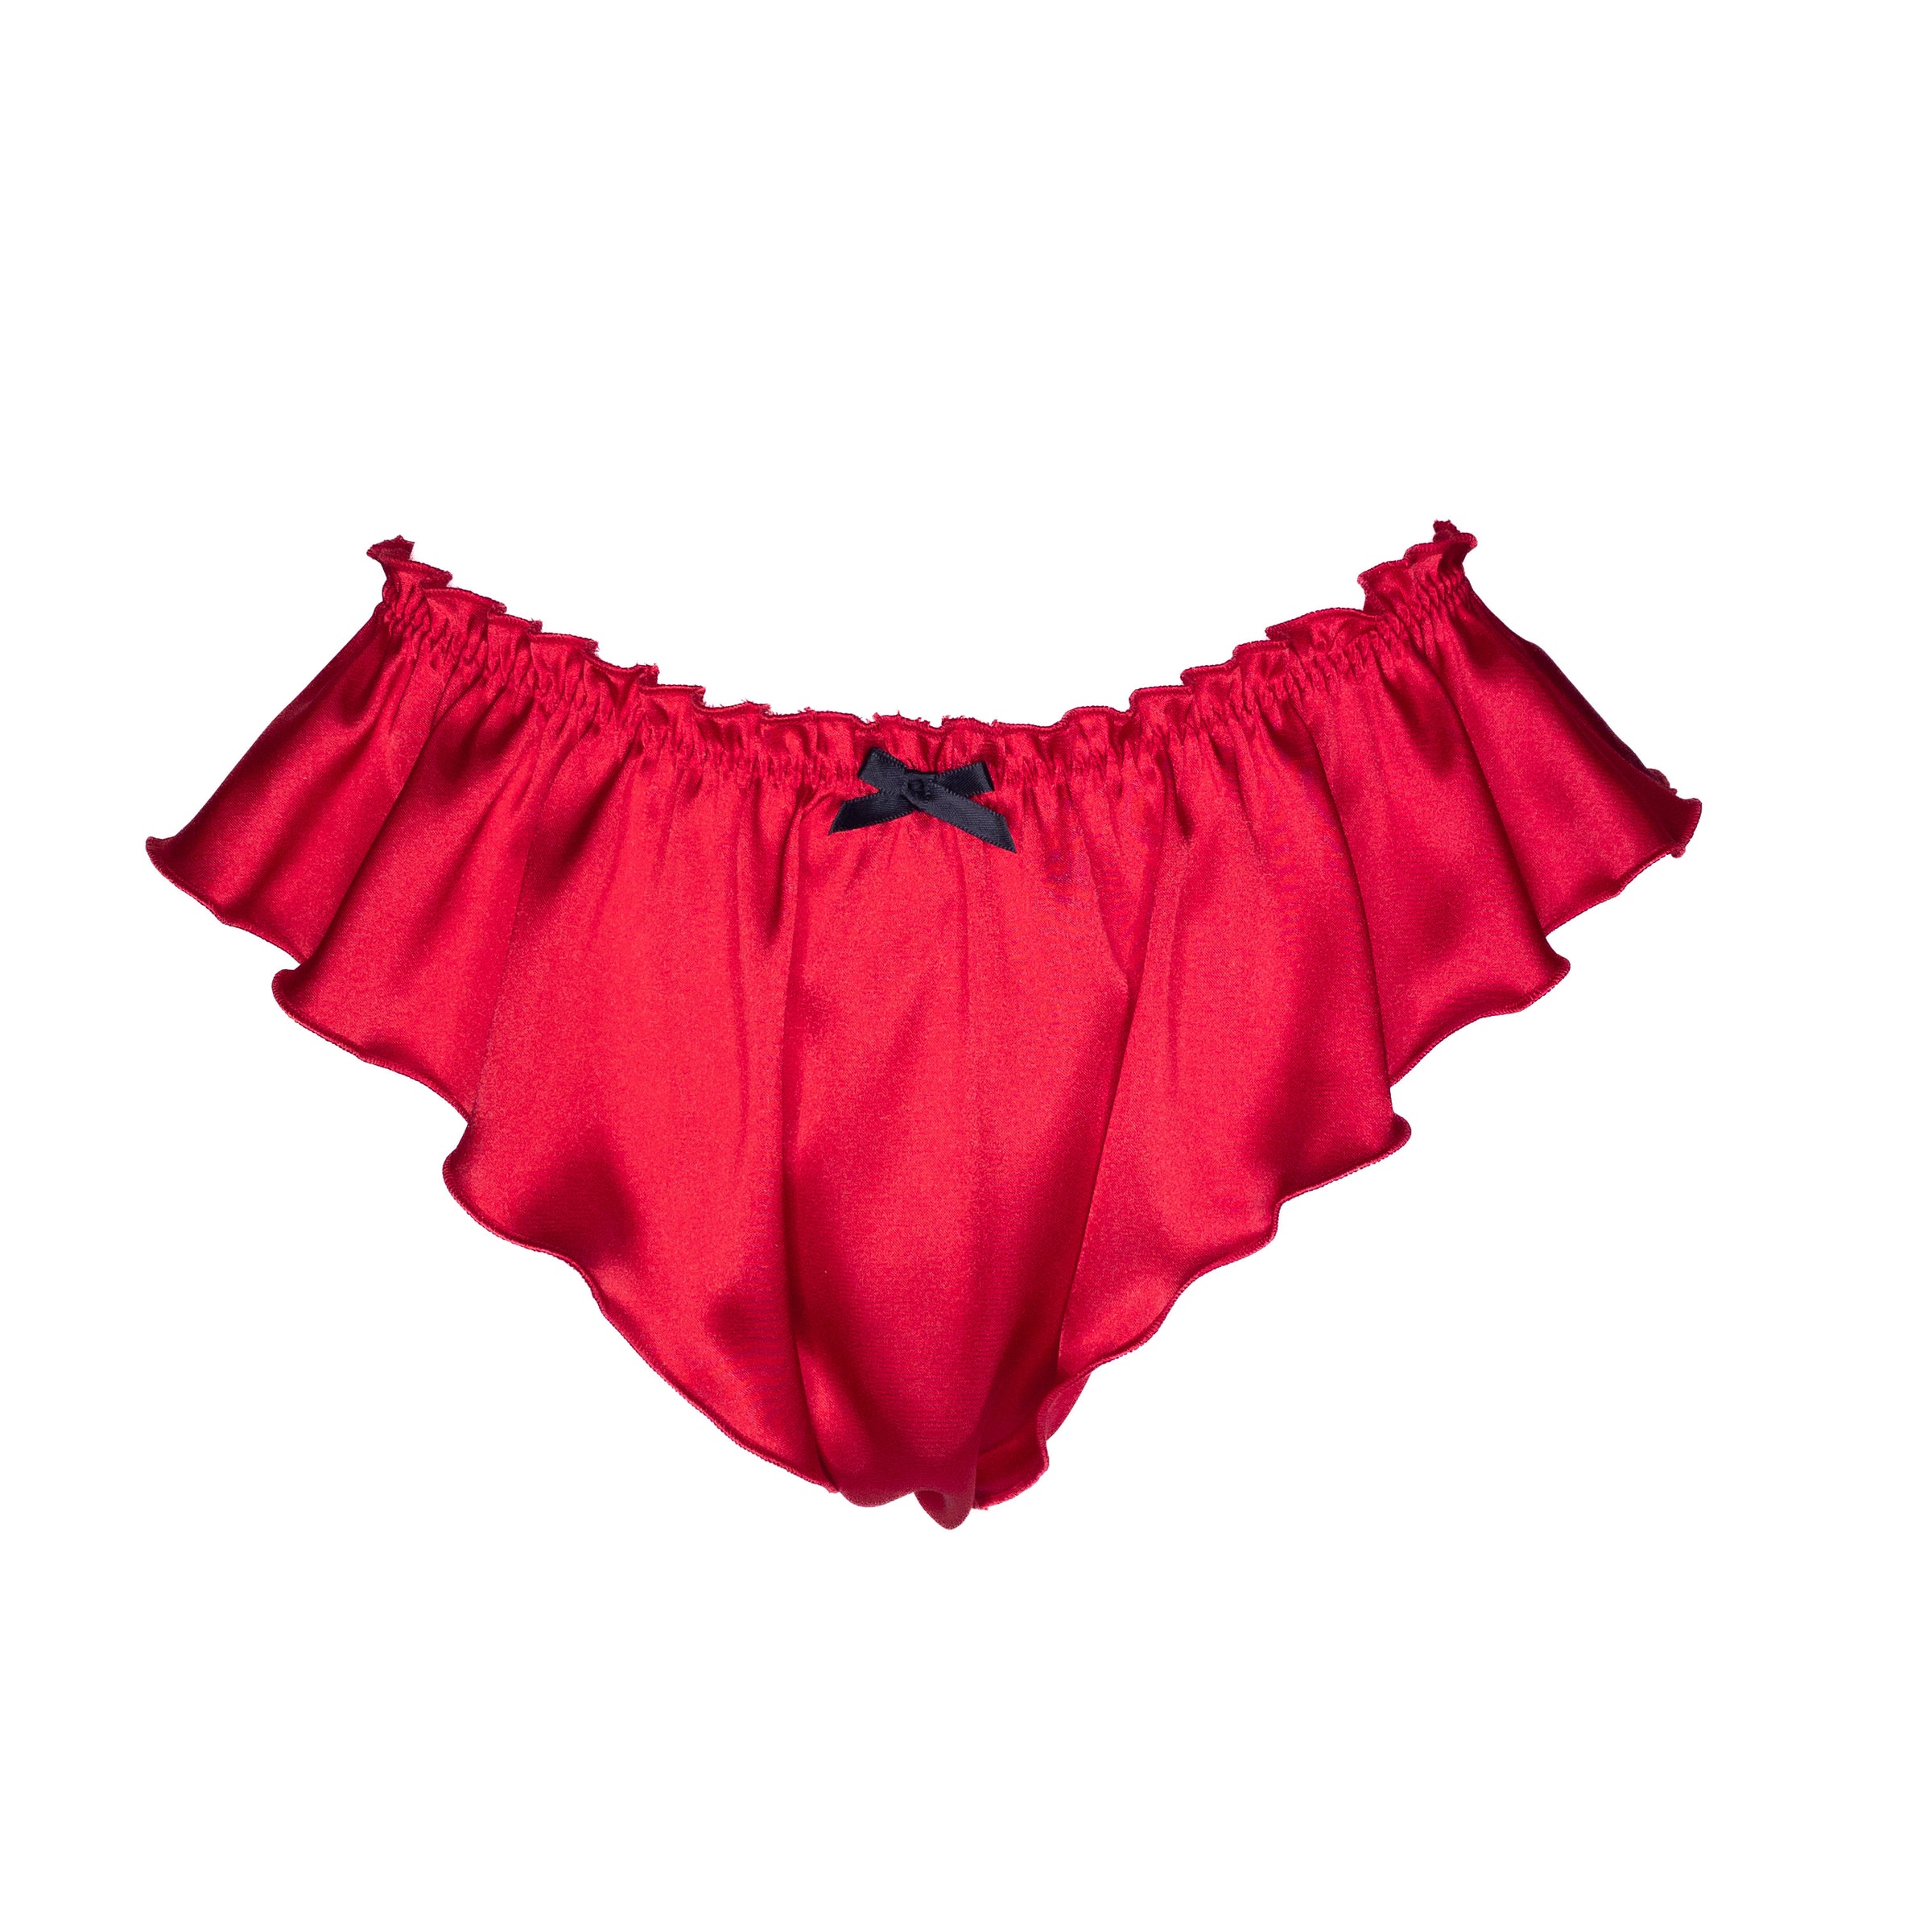 Mini French Knickers - Red Lingerie, Sleepwear & Loungewear Desvalido  Australia